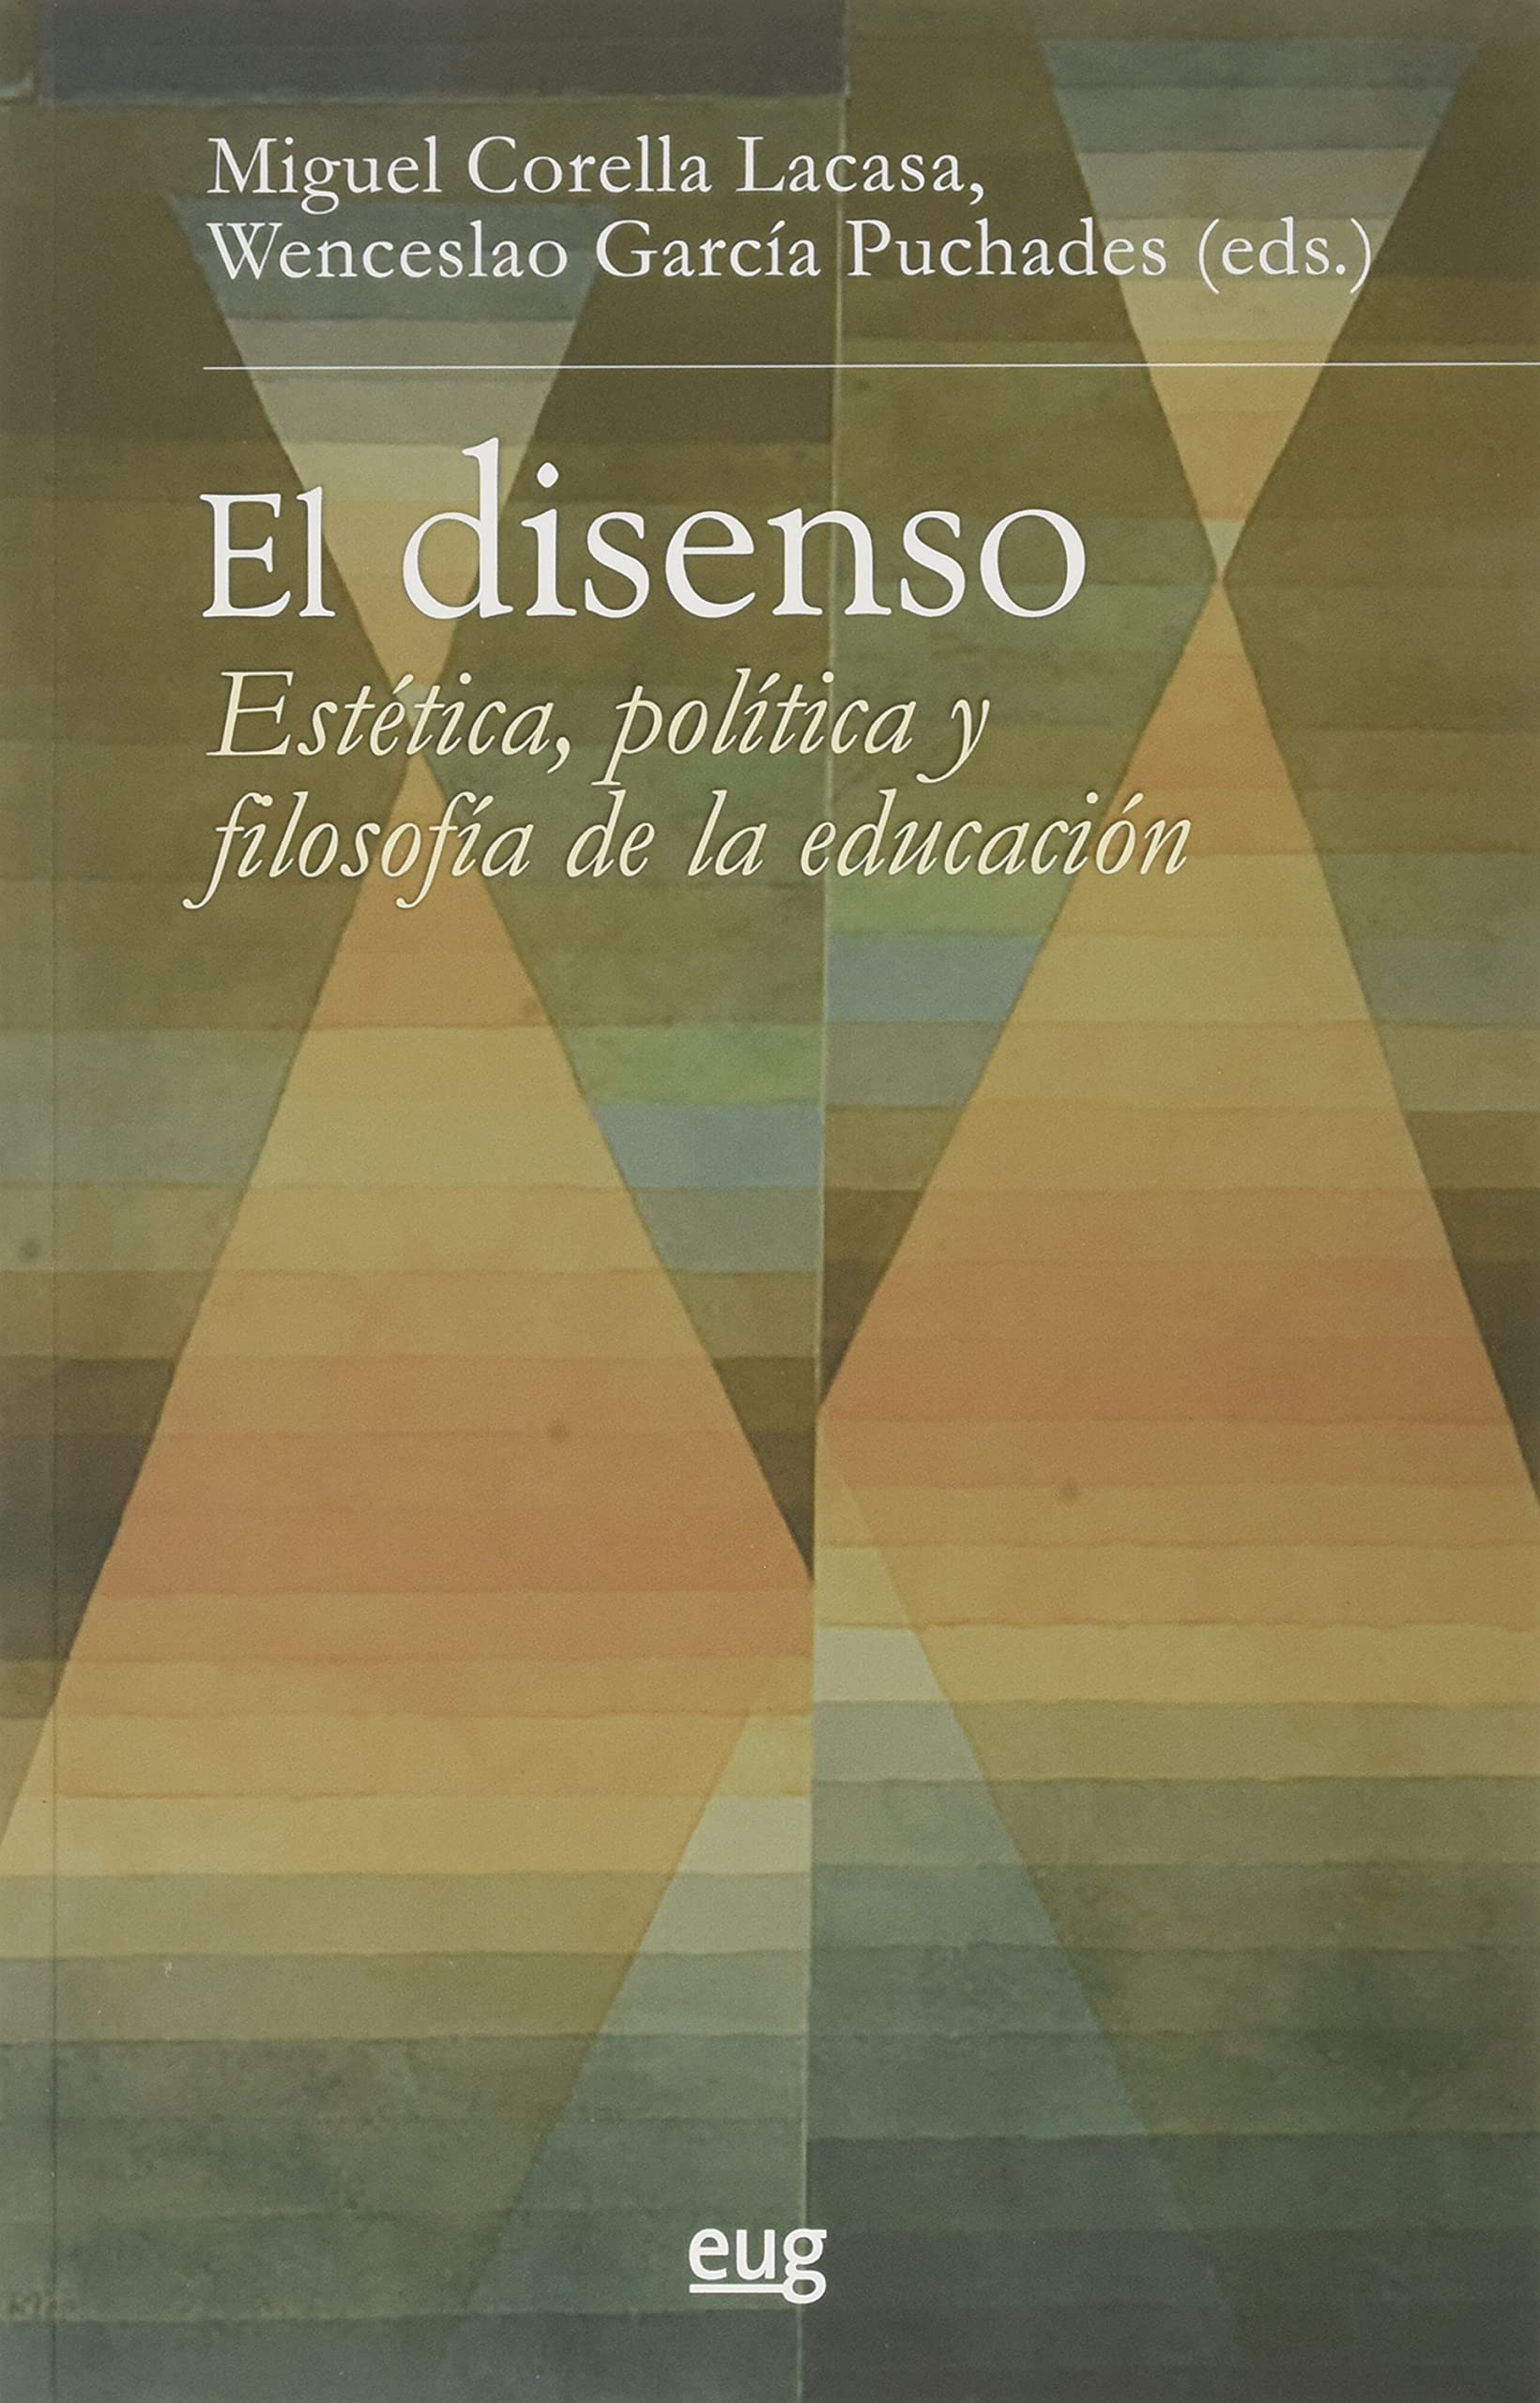 Imagen de portada del libro El disenso